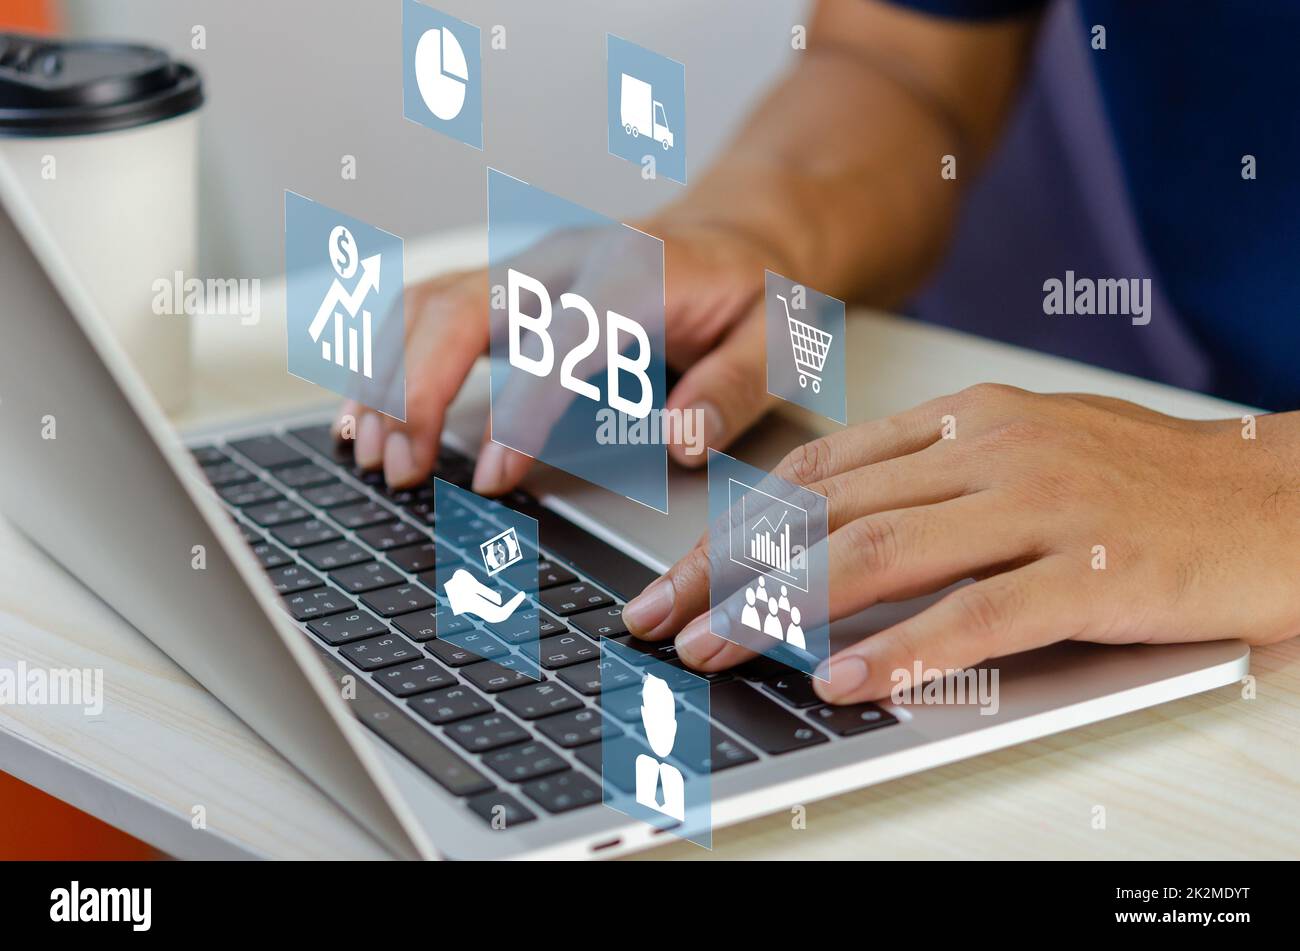 Main d'homme utilisant l'écran virtuel d'ordinateur portable B2B icônes et symboles de Business to Business. Concept de marketing de technologie d'entreprise. Banque D'Images